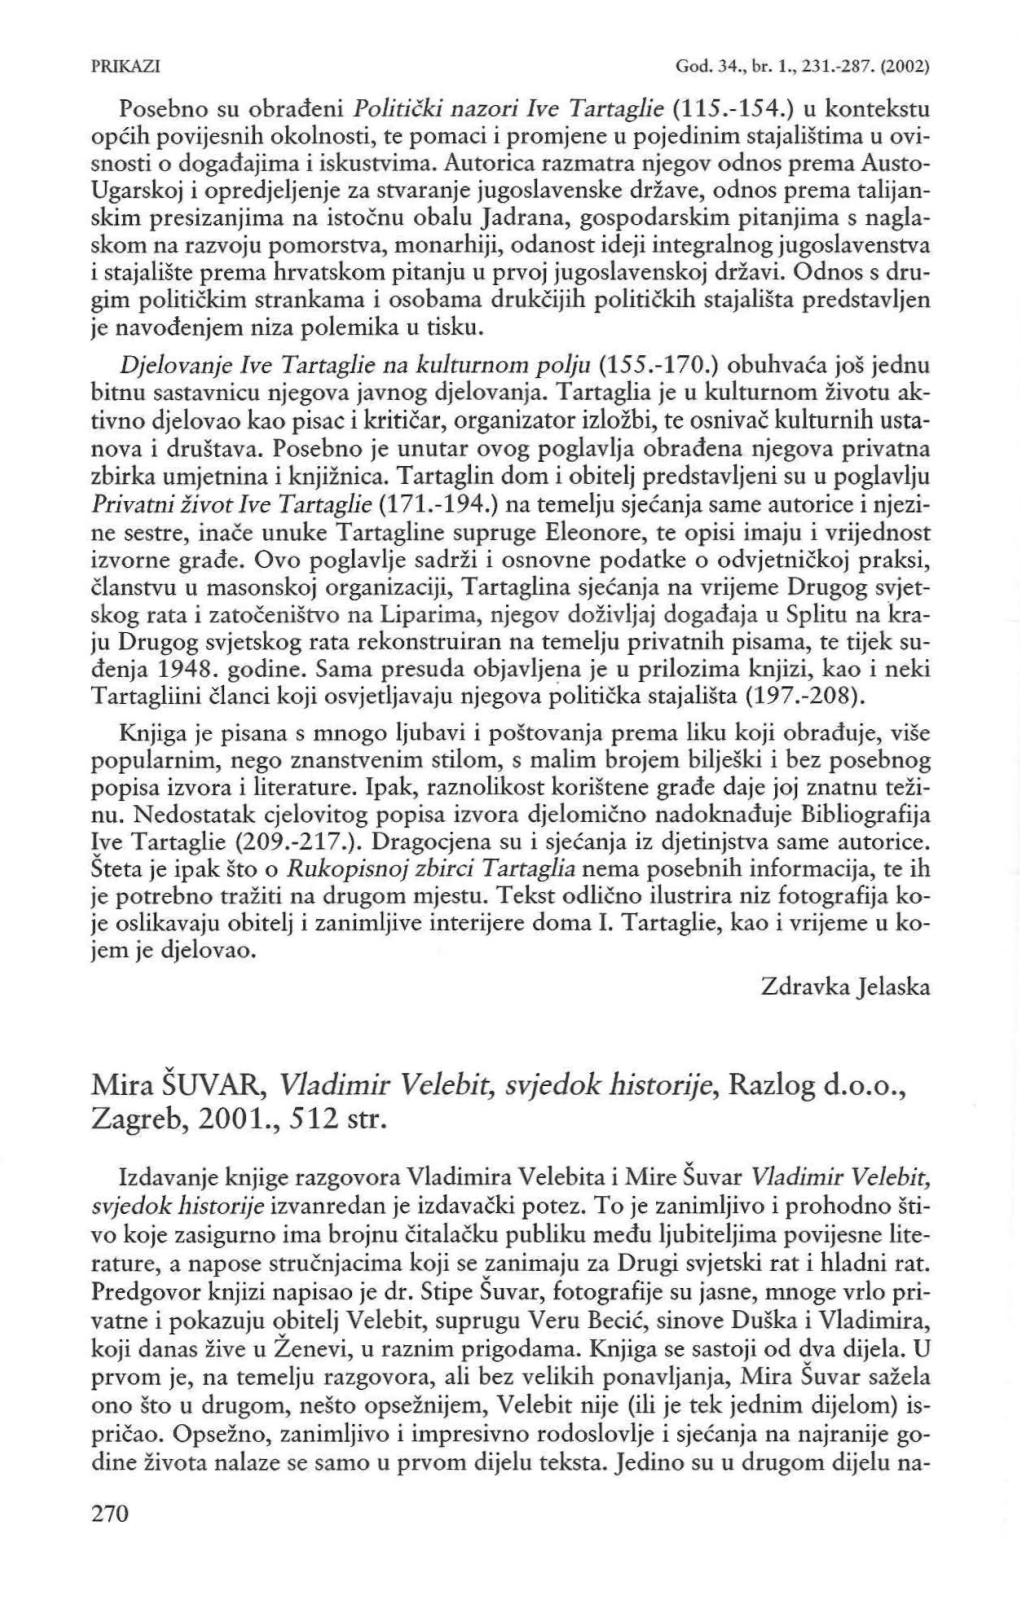 Mira ŠUVAR, Vladimir Velebit, Svjedok Historije, Razlog D.O.O., Zagreb, 2001., 512 Str